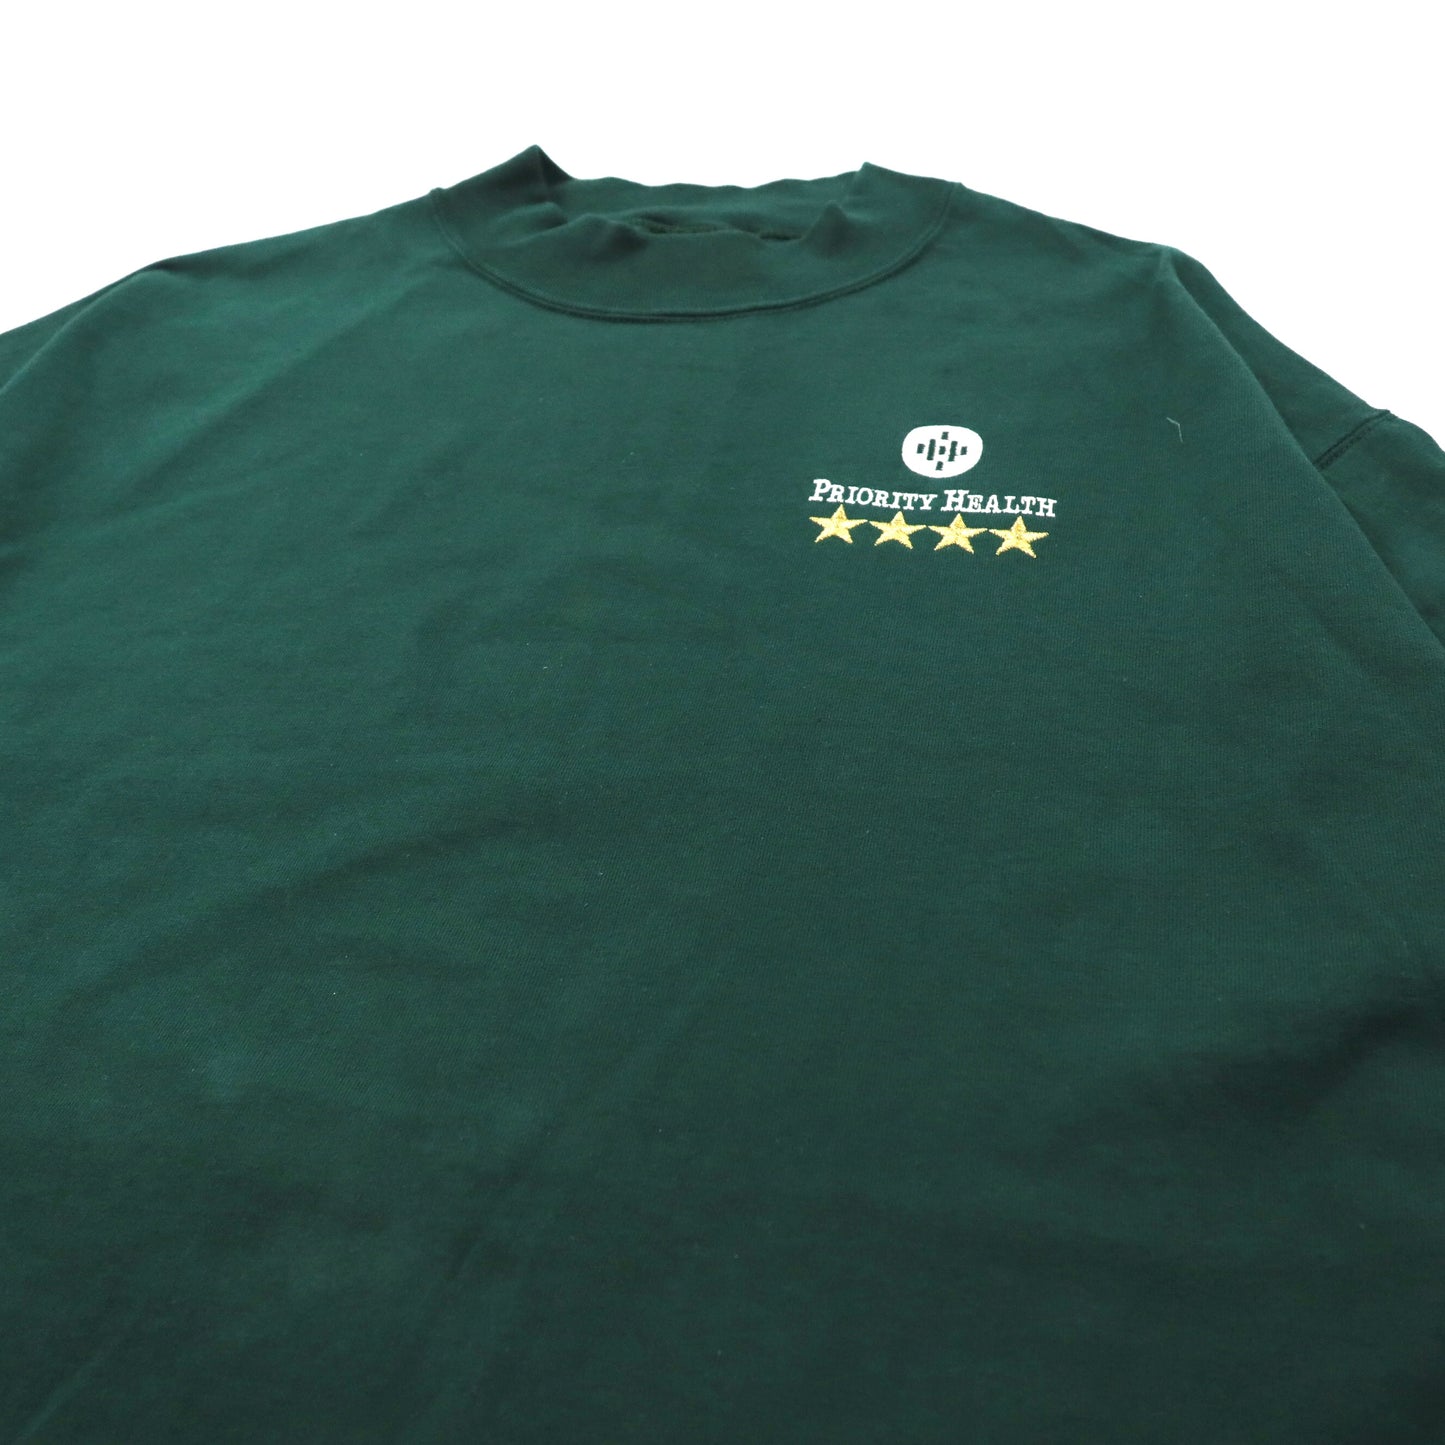 USA製 SOFEE'S Choice ビッグサイズ ハイネックTシャツ XL グリーン コットン US企業刺繍